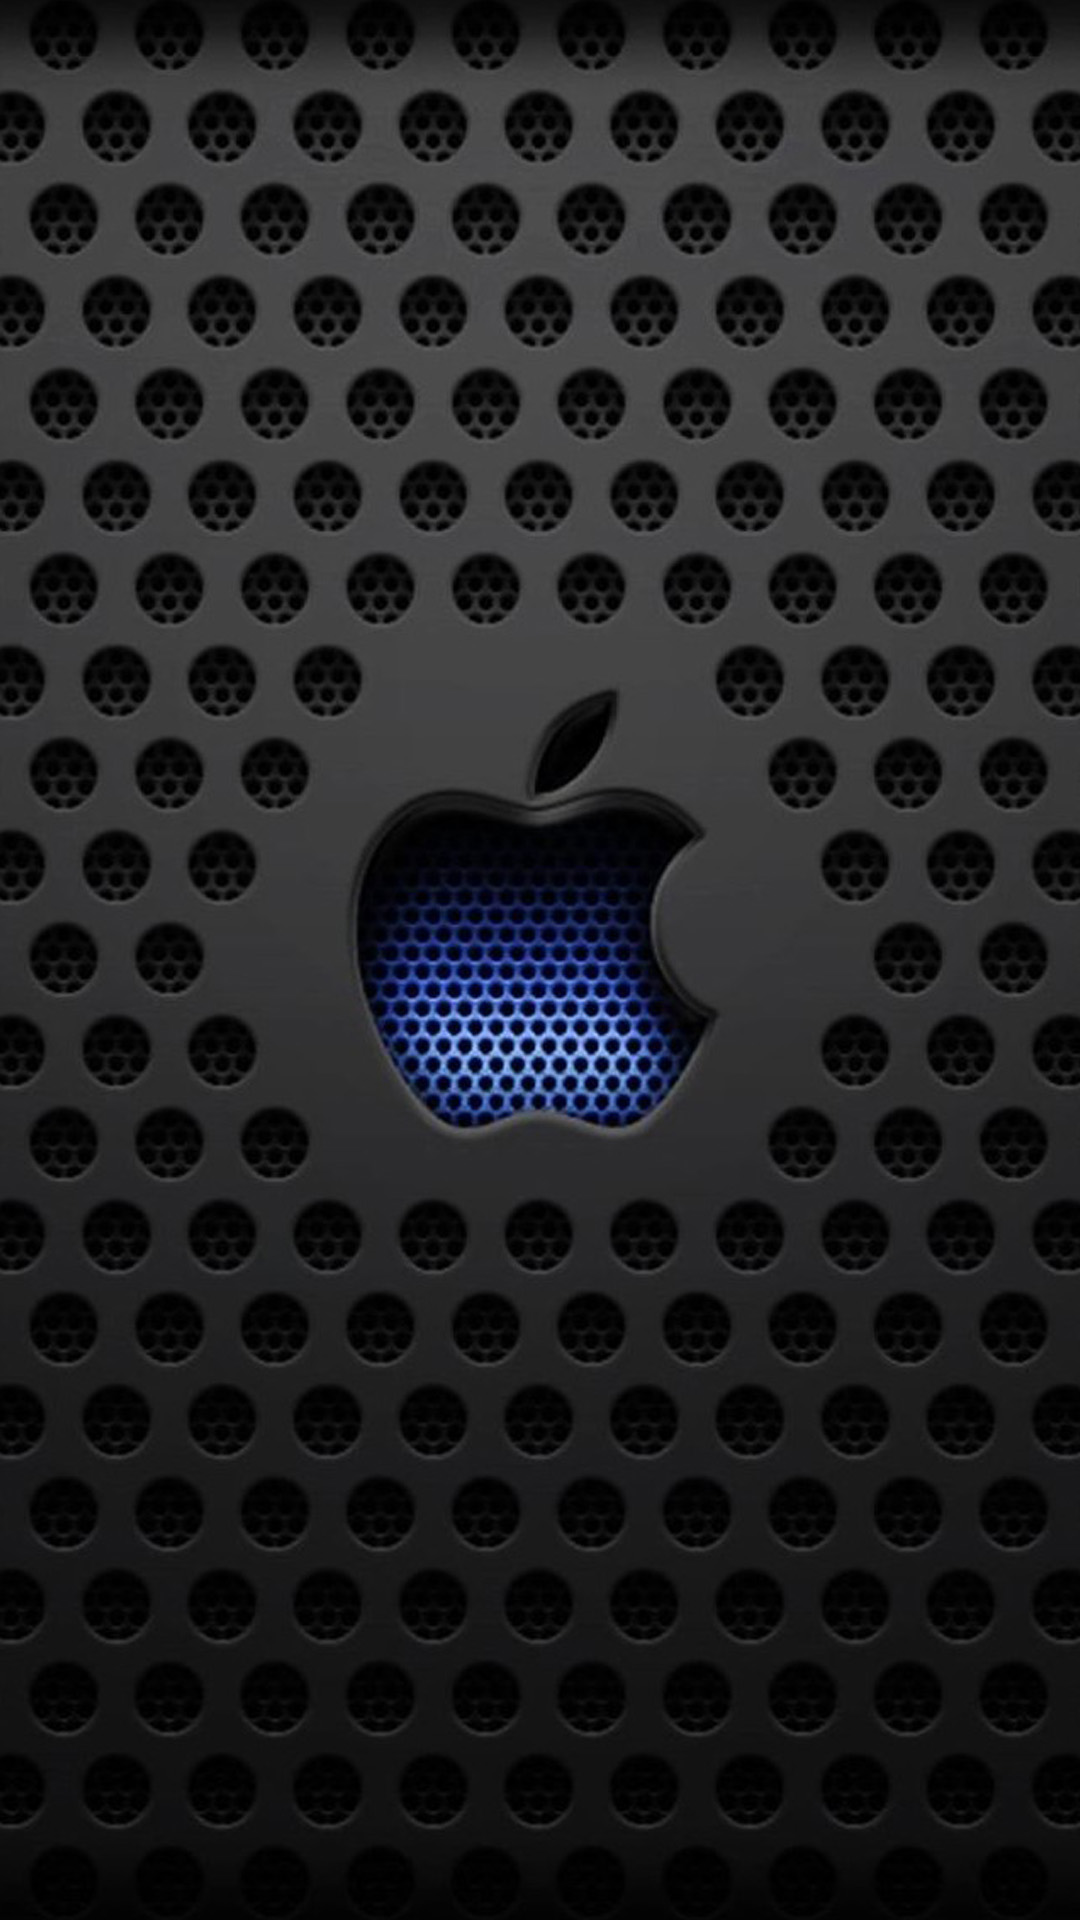 46+] Apple 6 Plus Wallpapers - WallpaperSafari